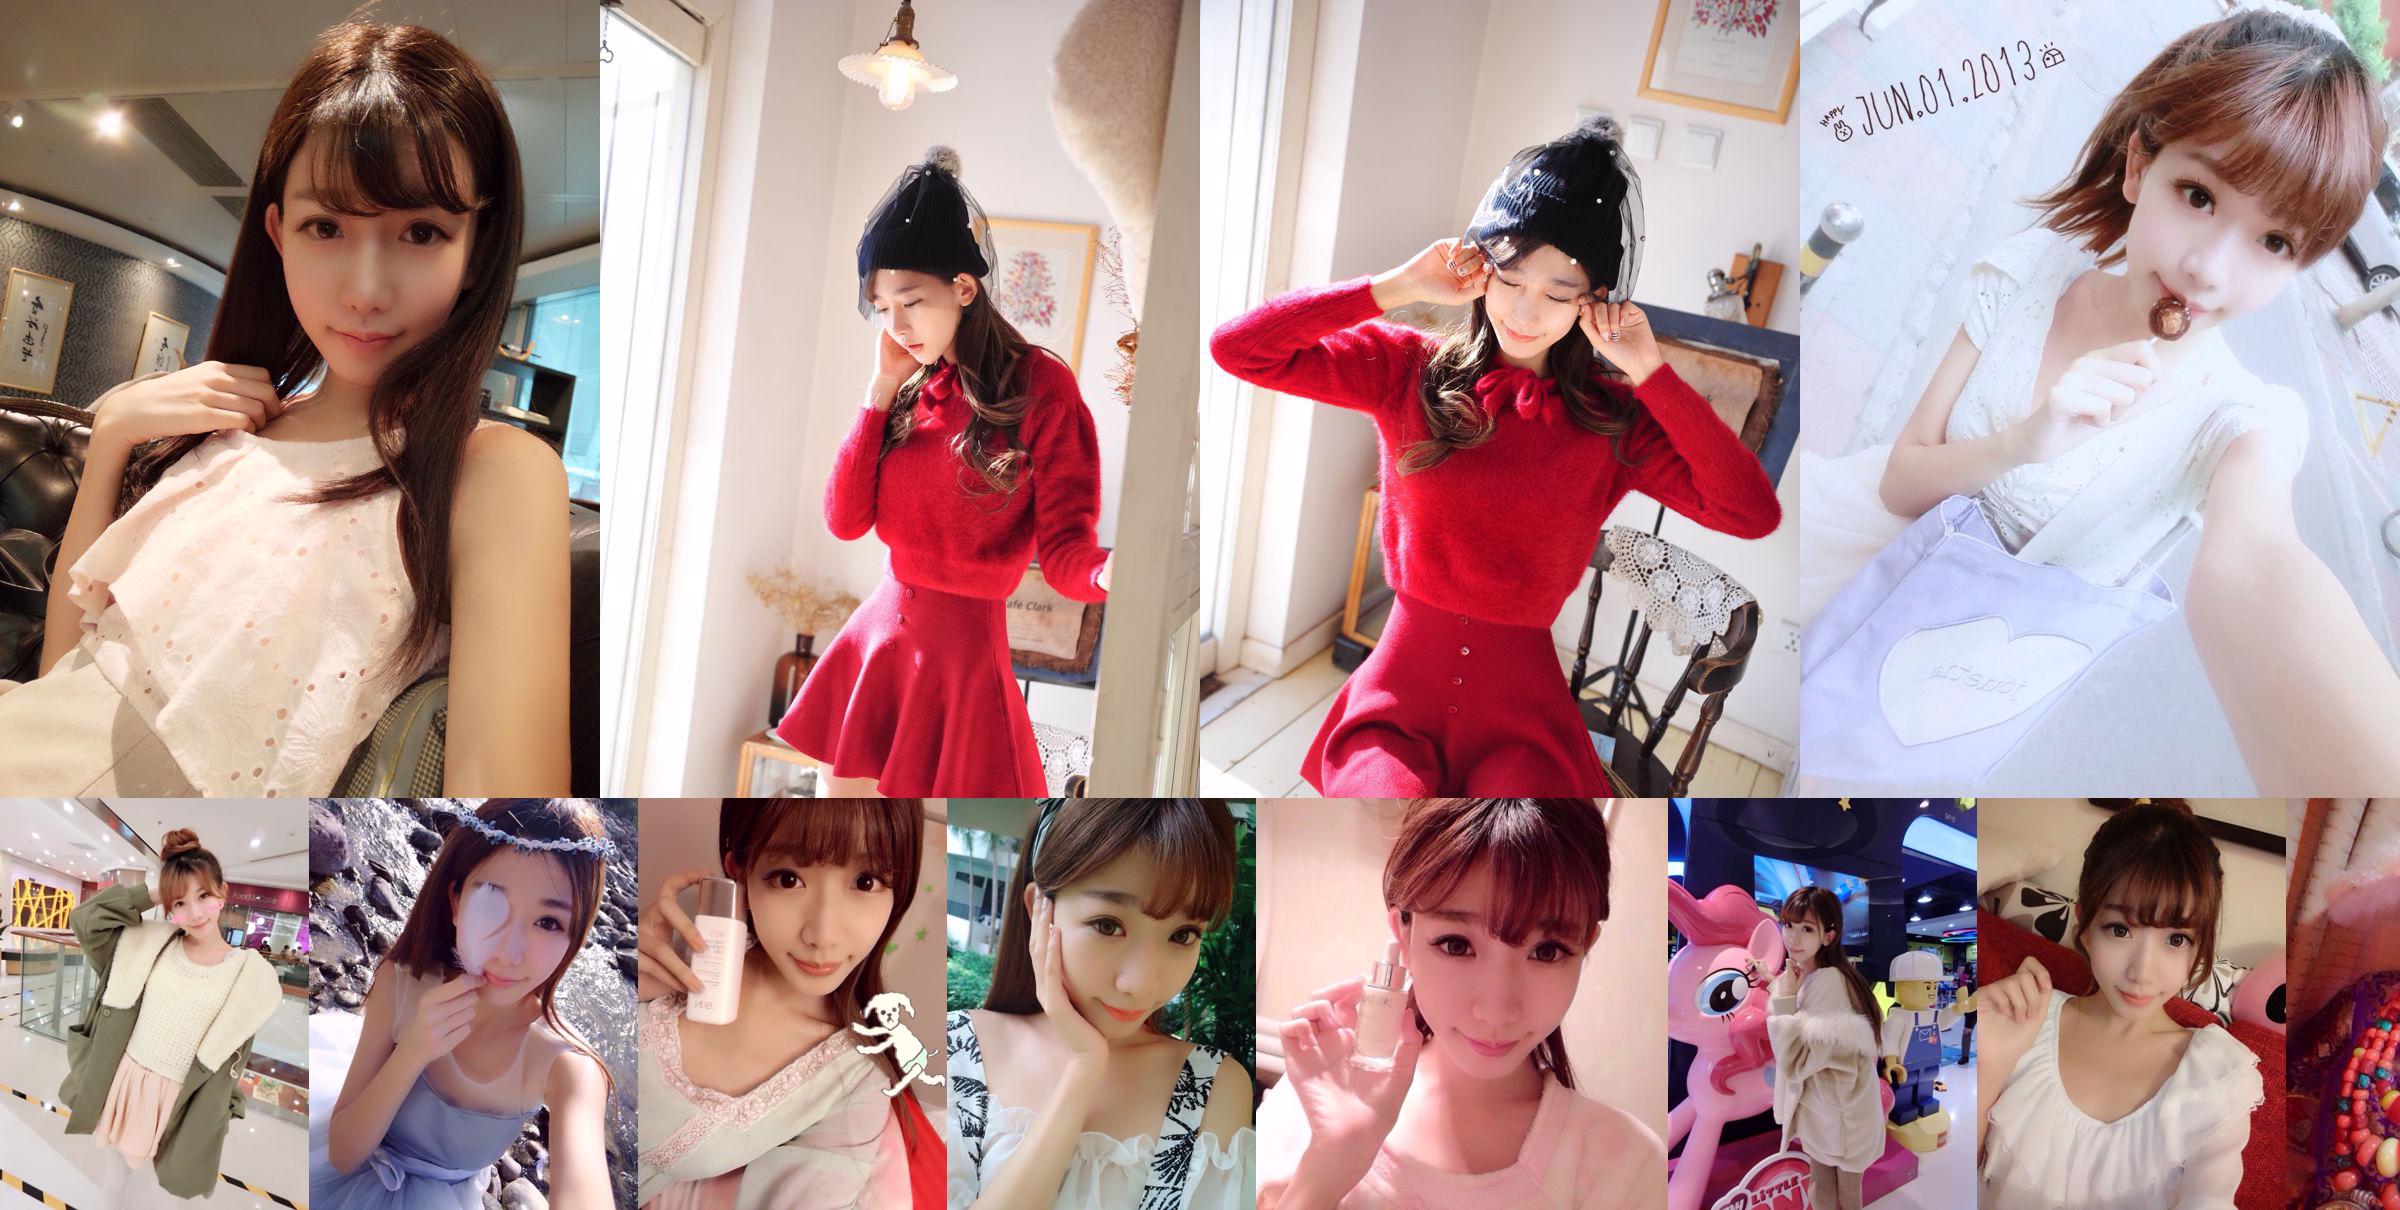 Irmã de Taiwan, celebridade da Internet, Chen Xiao "Weibo Selfie Pictures" Parte 1 Coleção de fotos No.875a61 Página 48